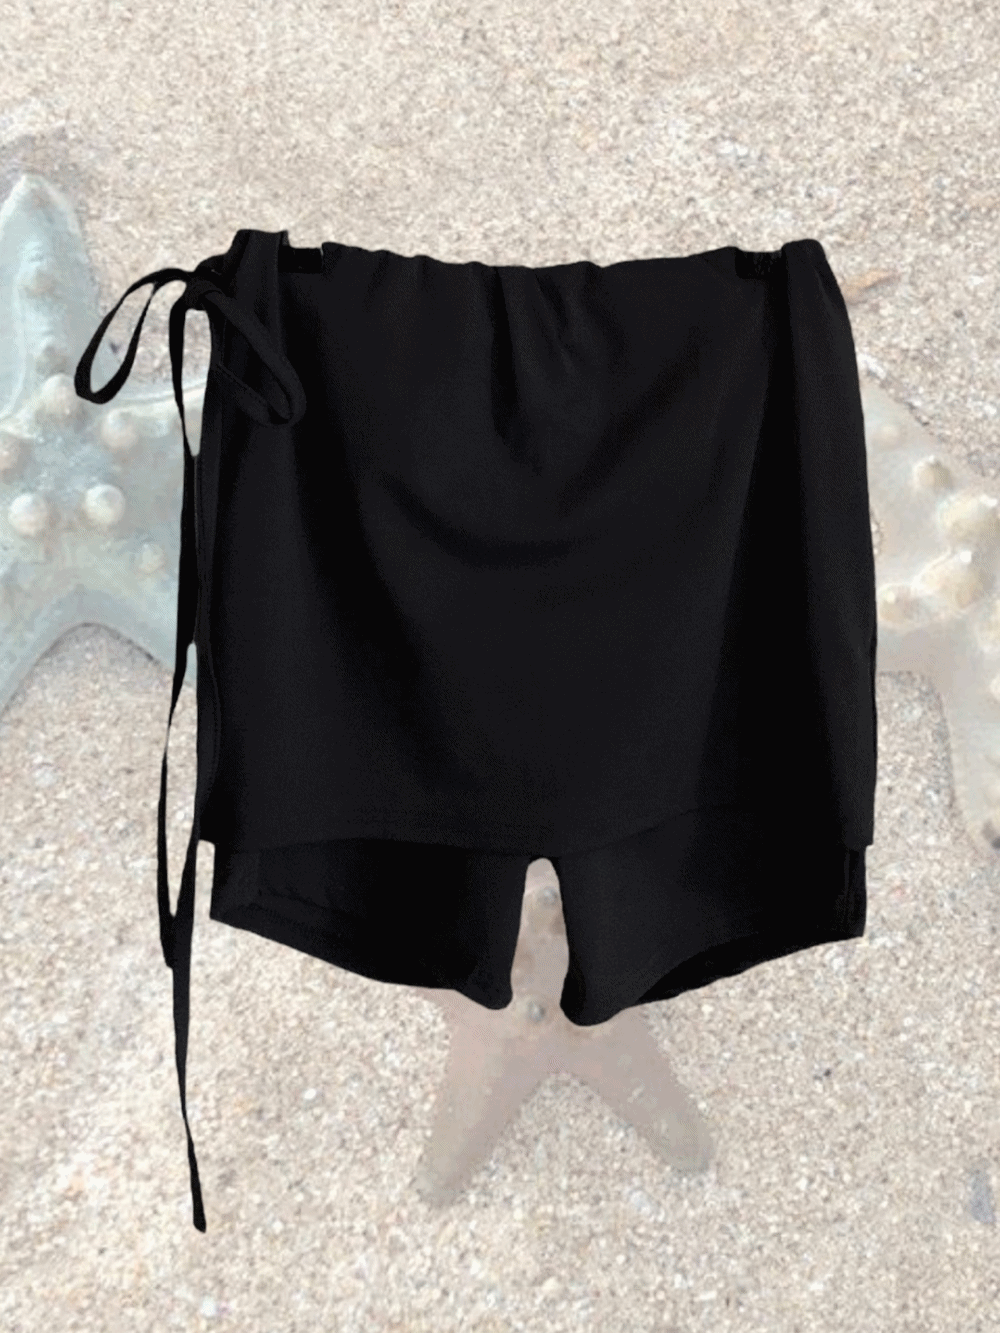 [Bottom] Poe Skirt String Shorts Leggings / 2 colors